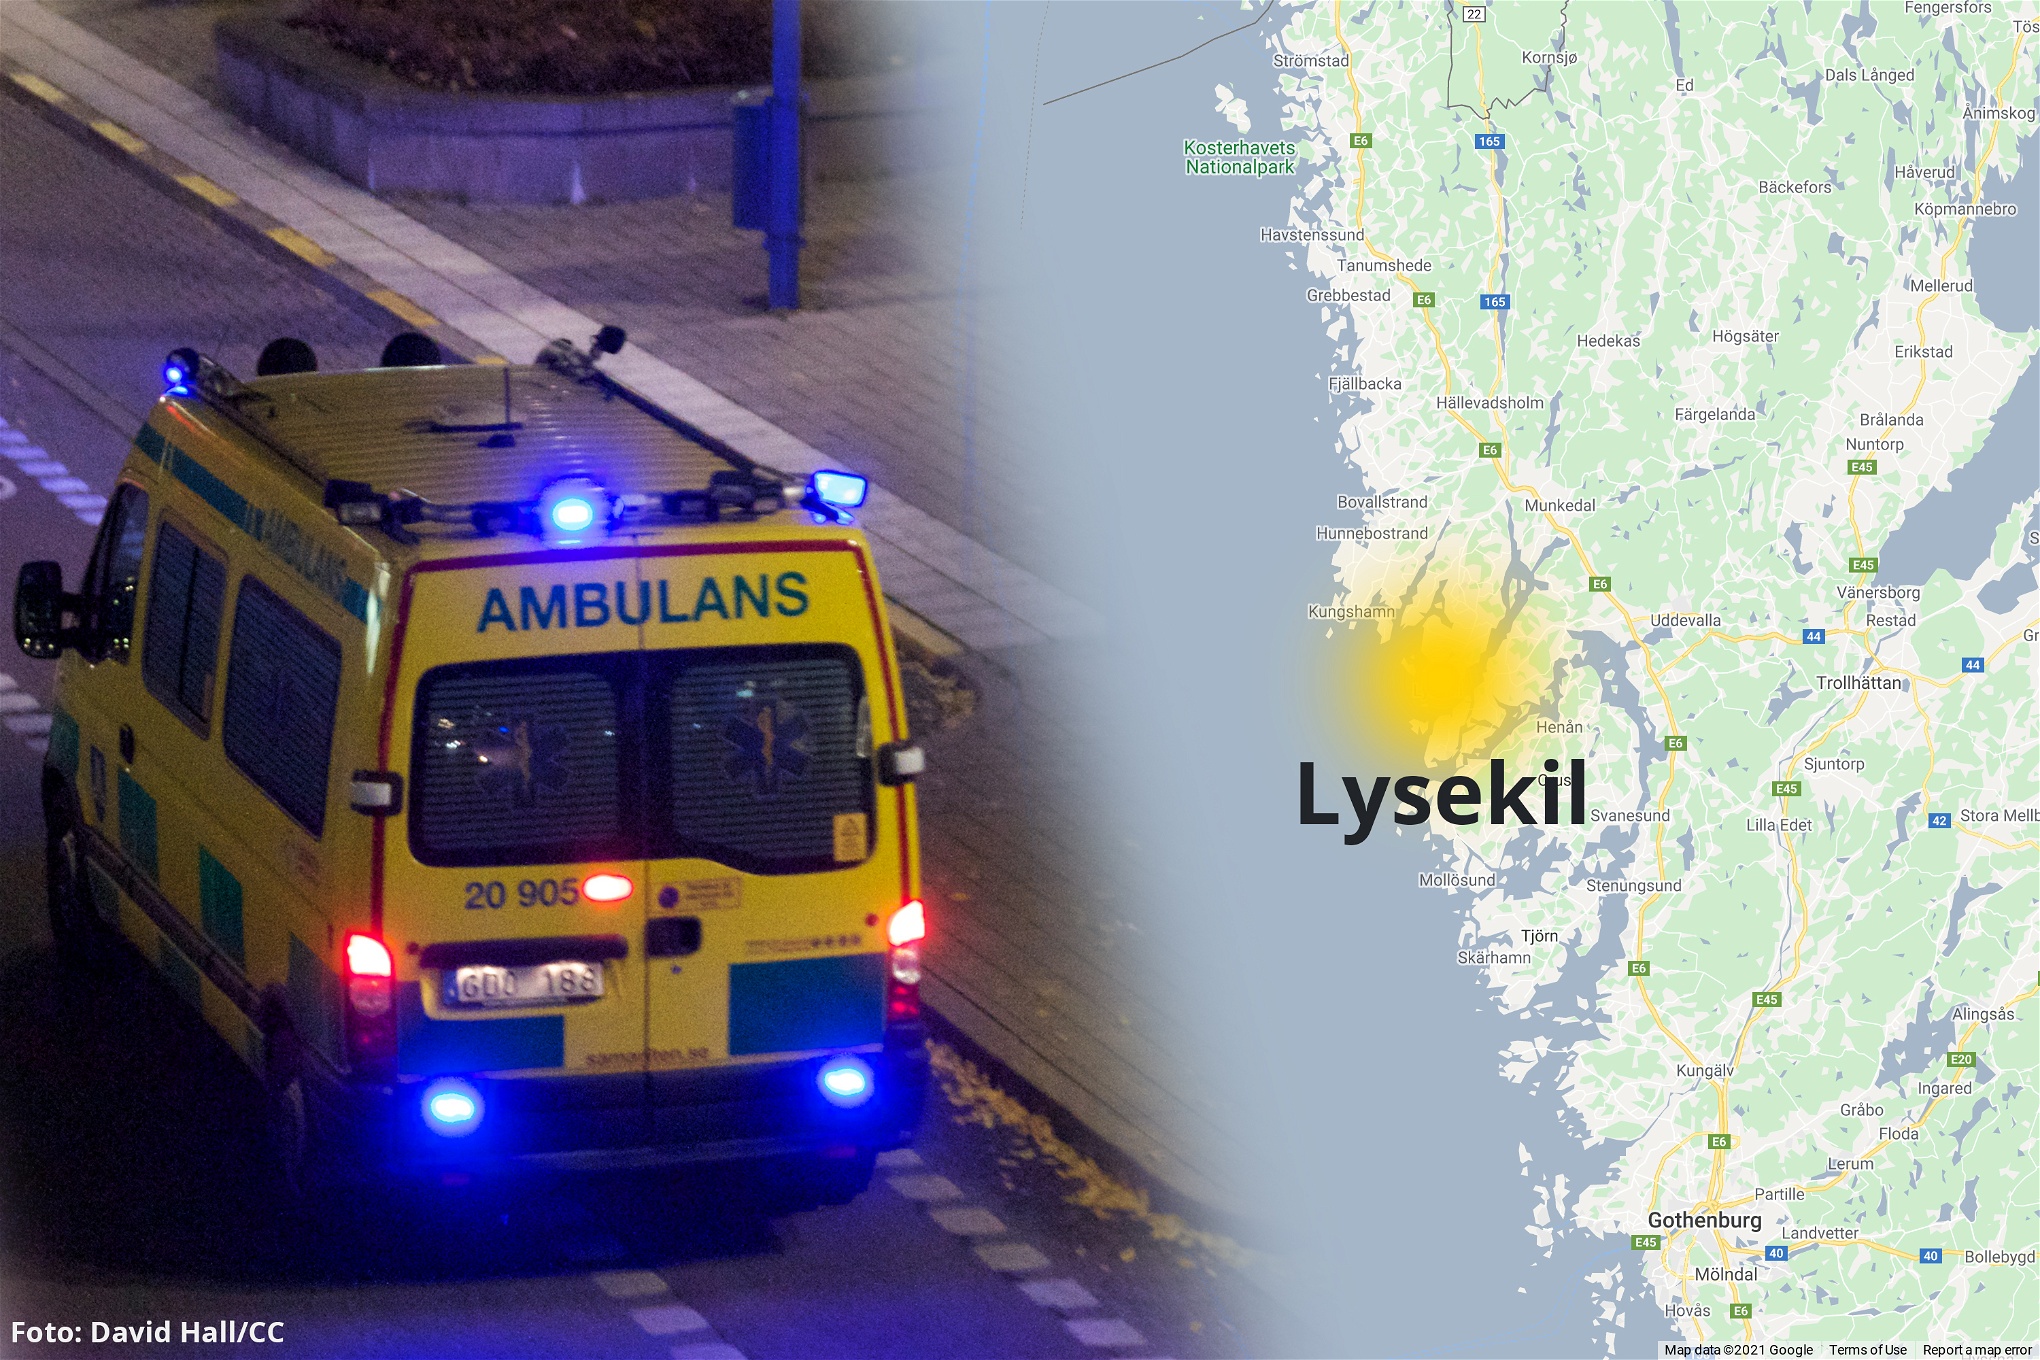 Ambulans med blinkande lampor och en karta där Lysekil är utmärkt.